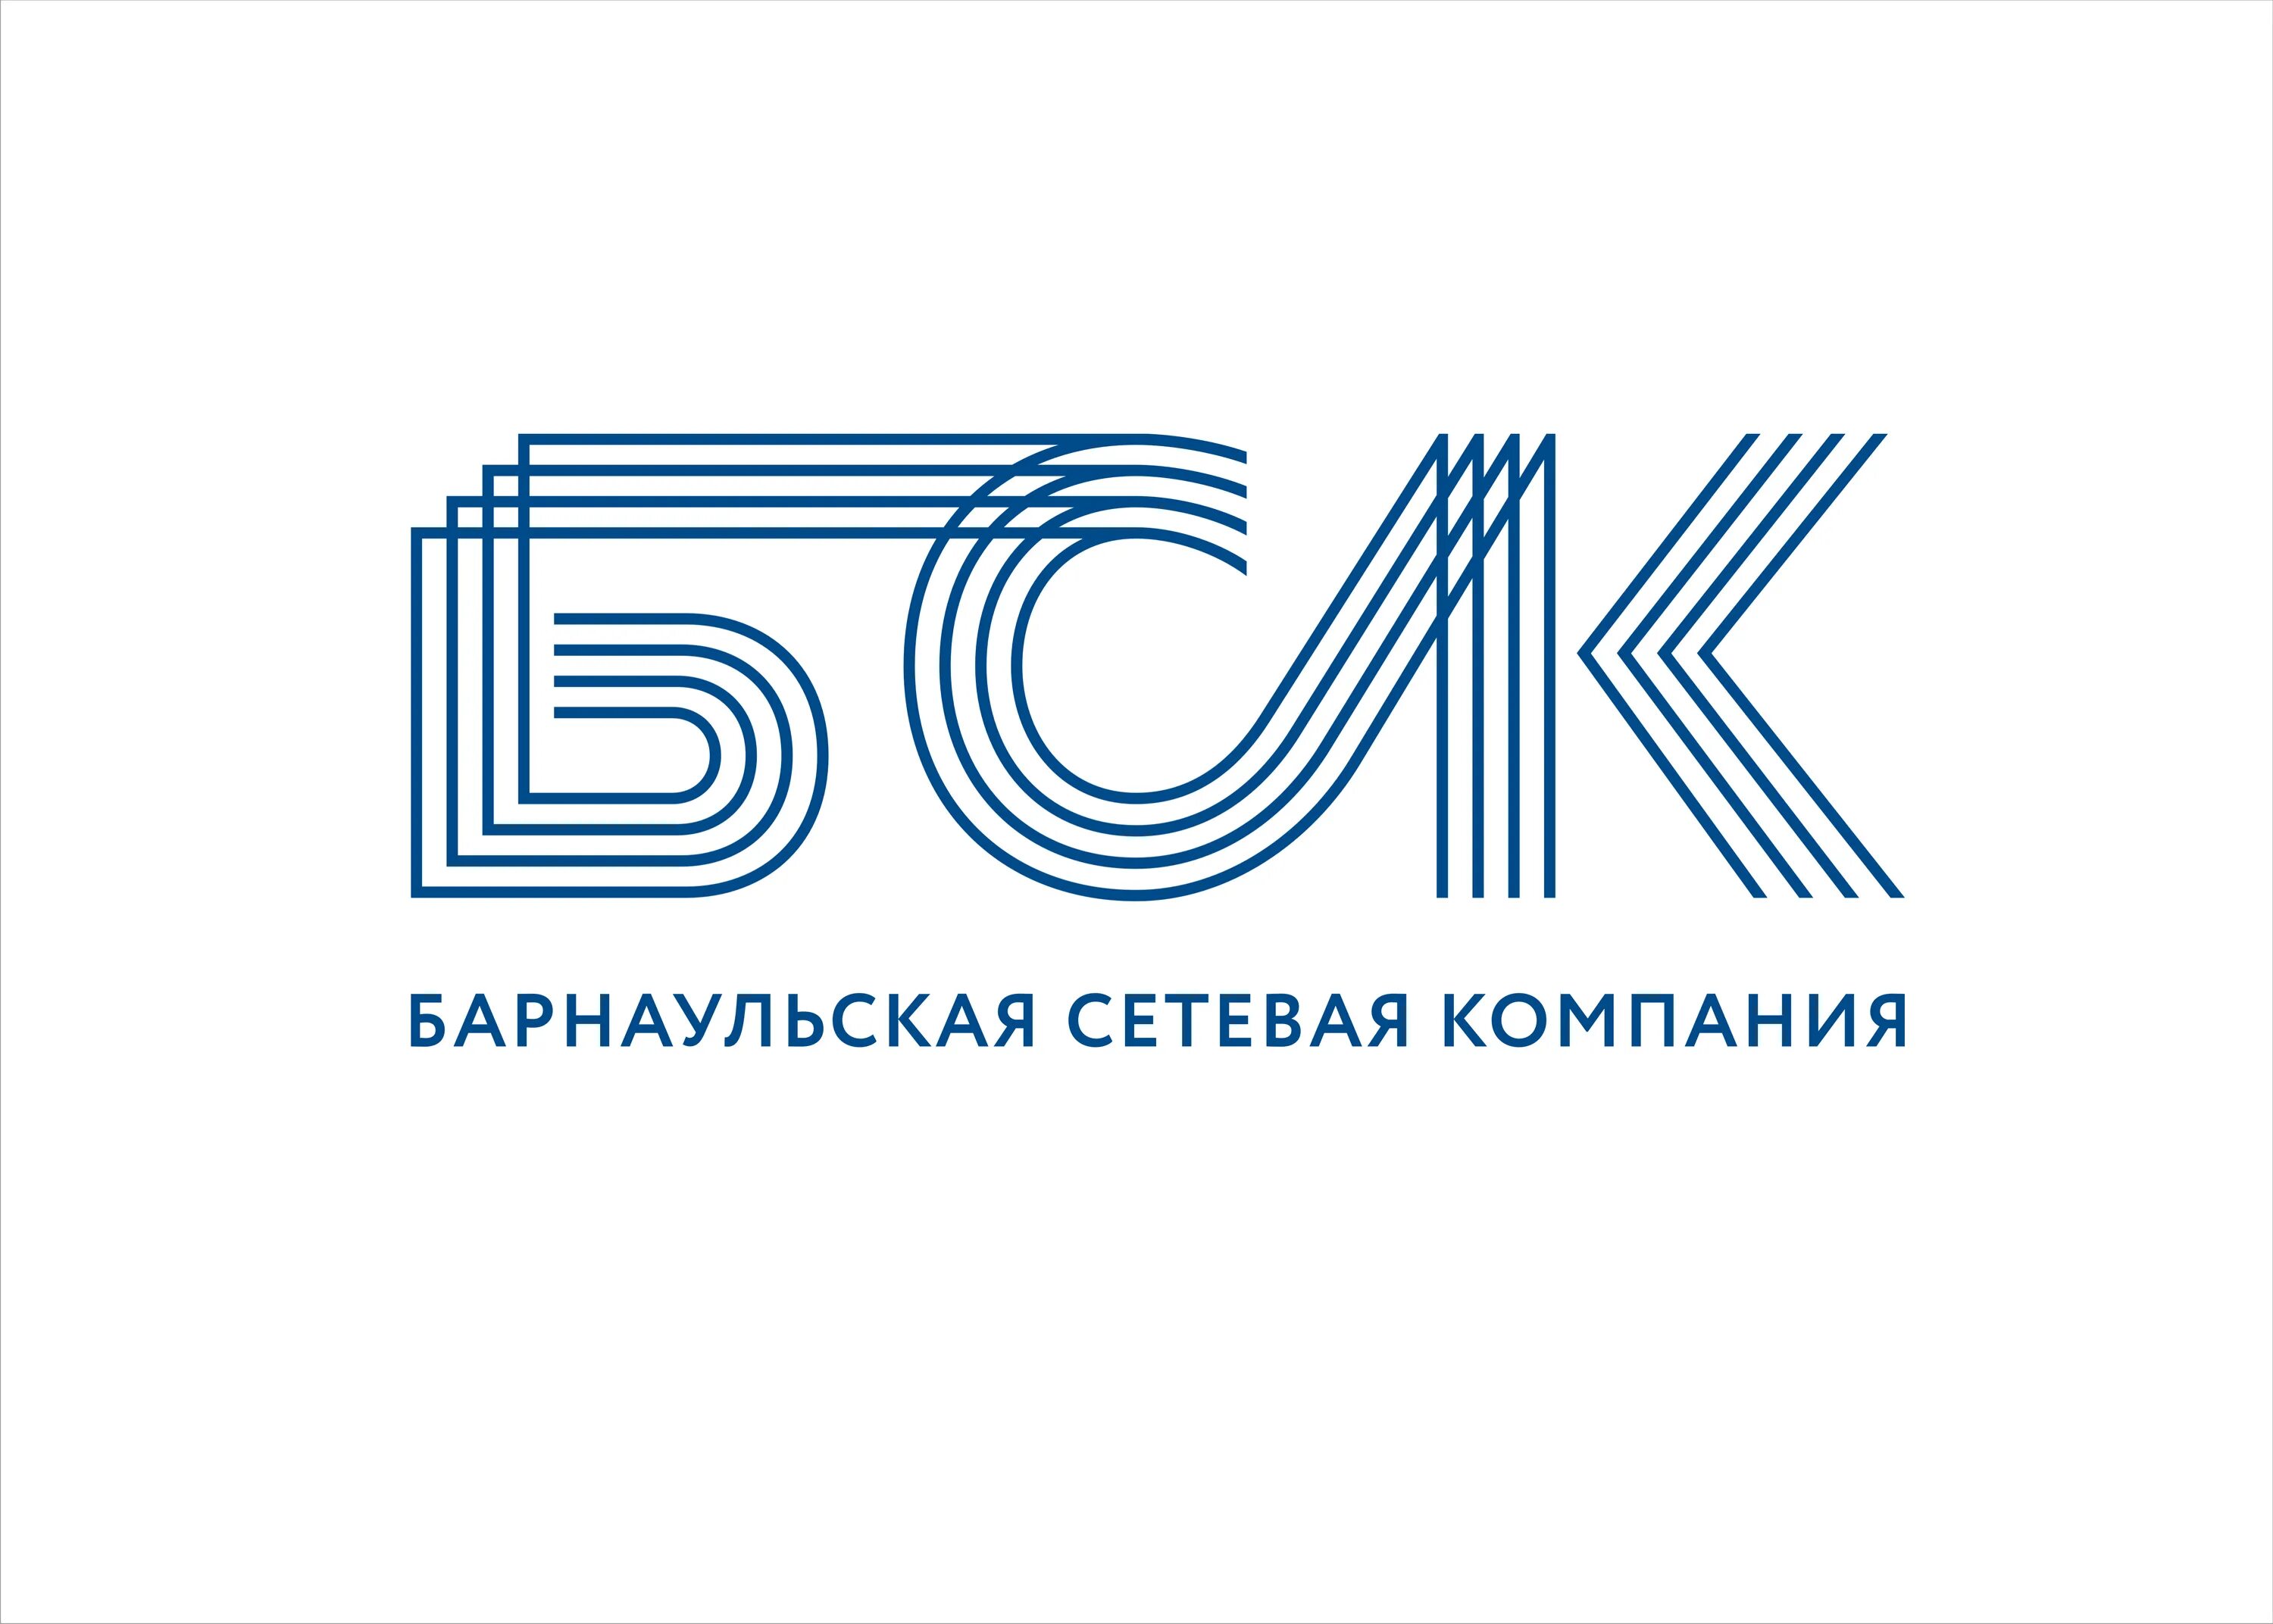 Барнаульская сетевая компания логотип. Барнаульская сервисная компания Барнаул. ООО БСК Барнаул. ООО сетевая компания.